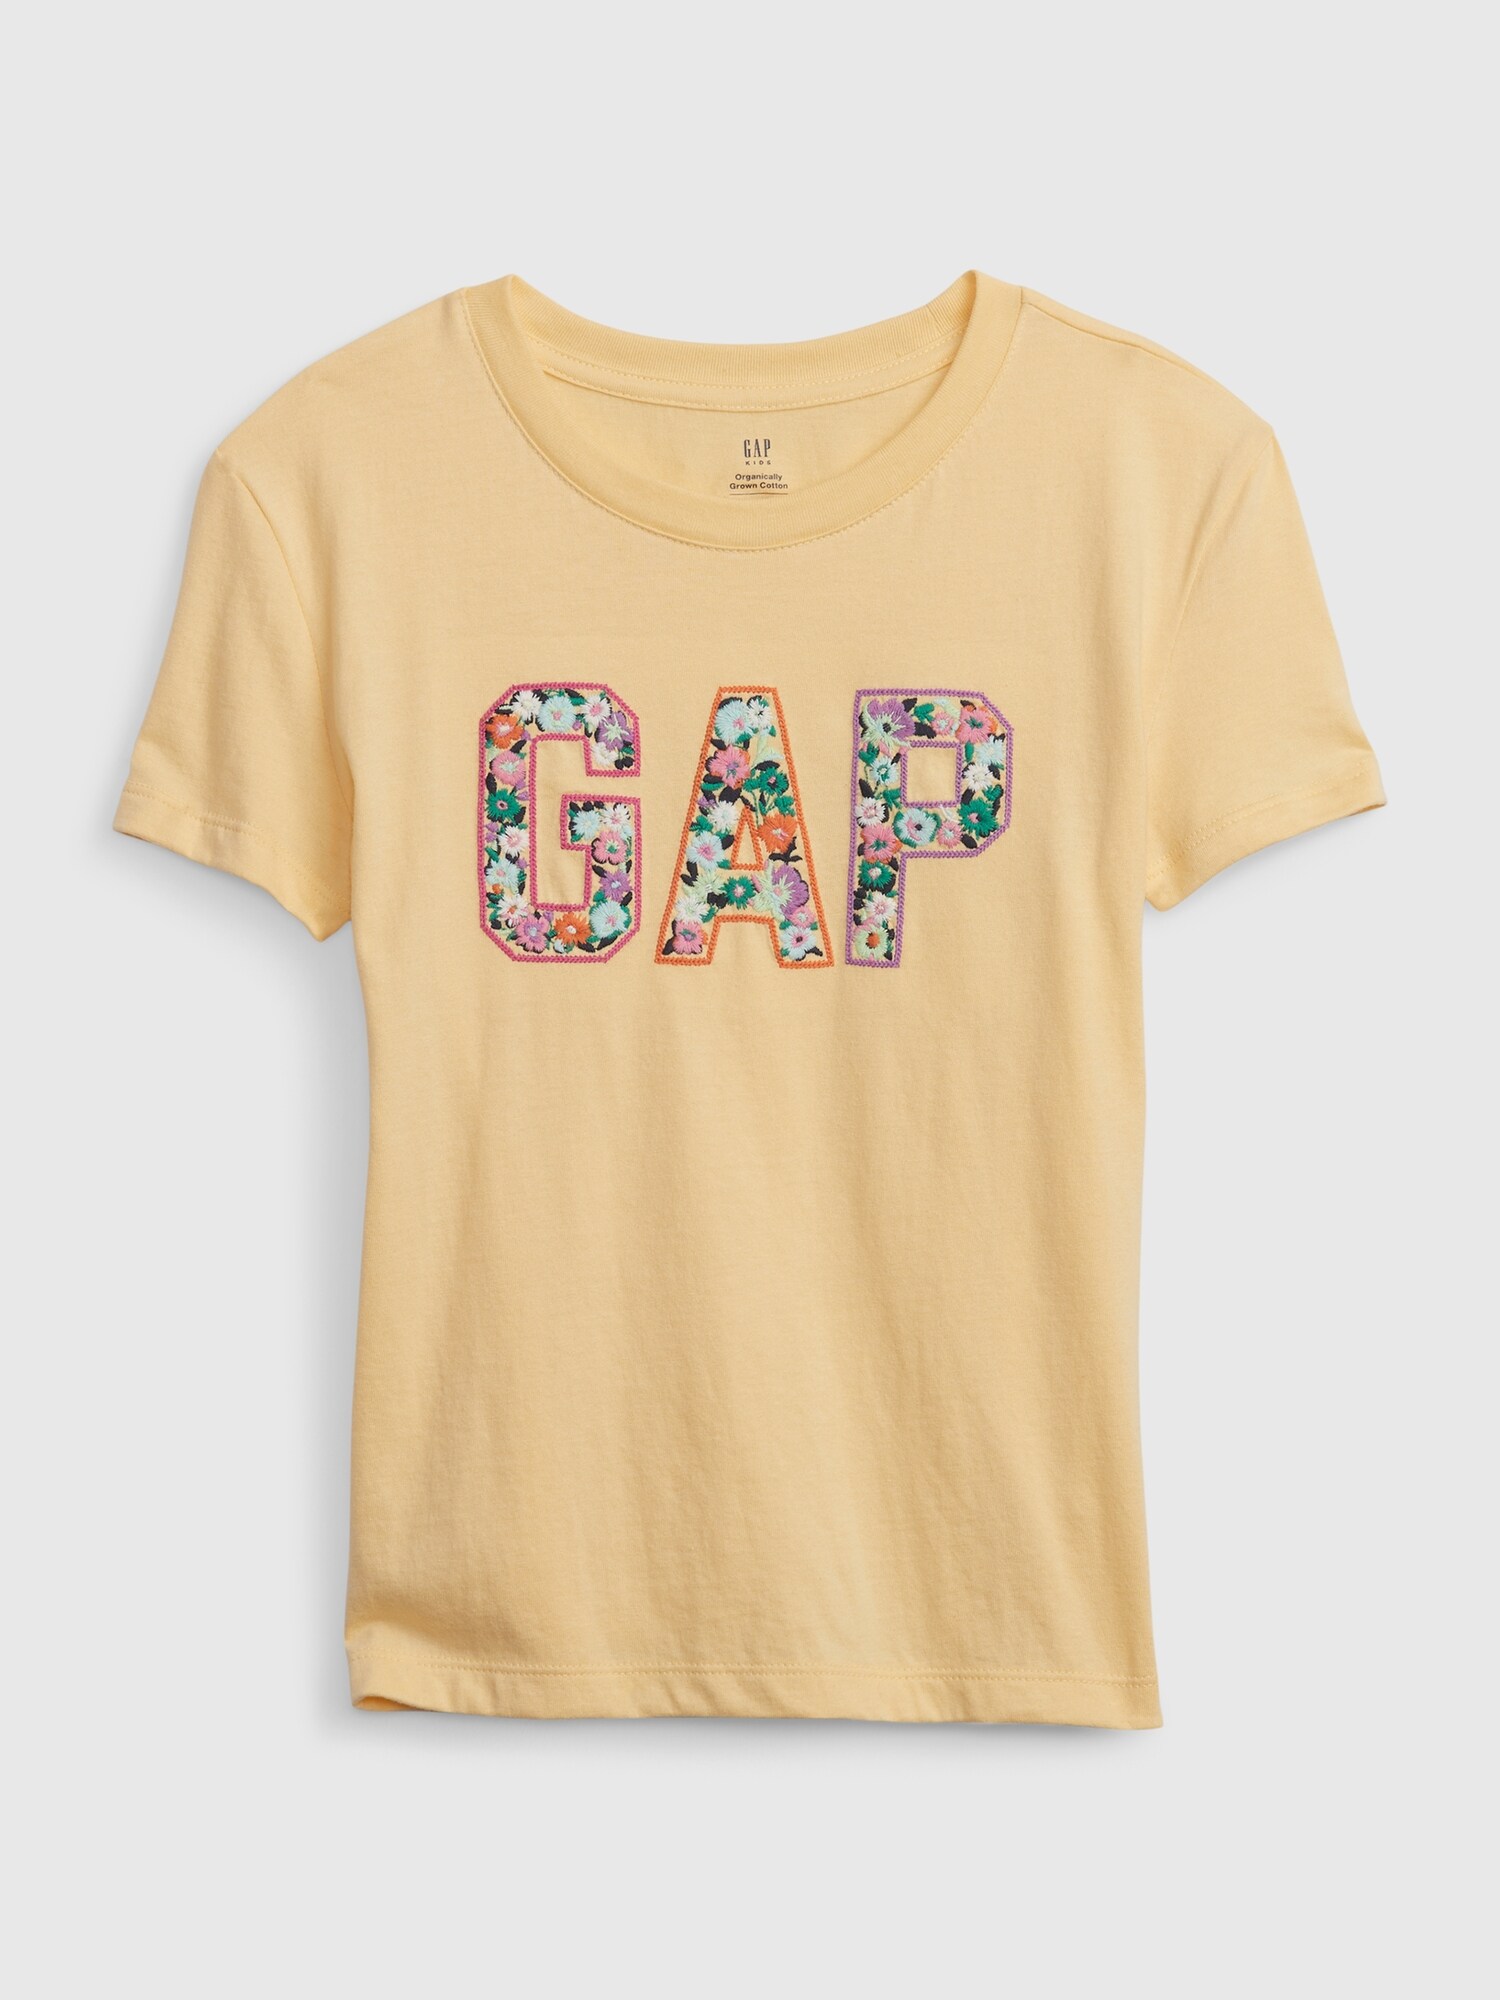 Gap公式オンラインストア オーガニックコットン100% GAPロゴ Tシャツ (キッズ)